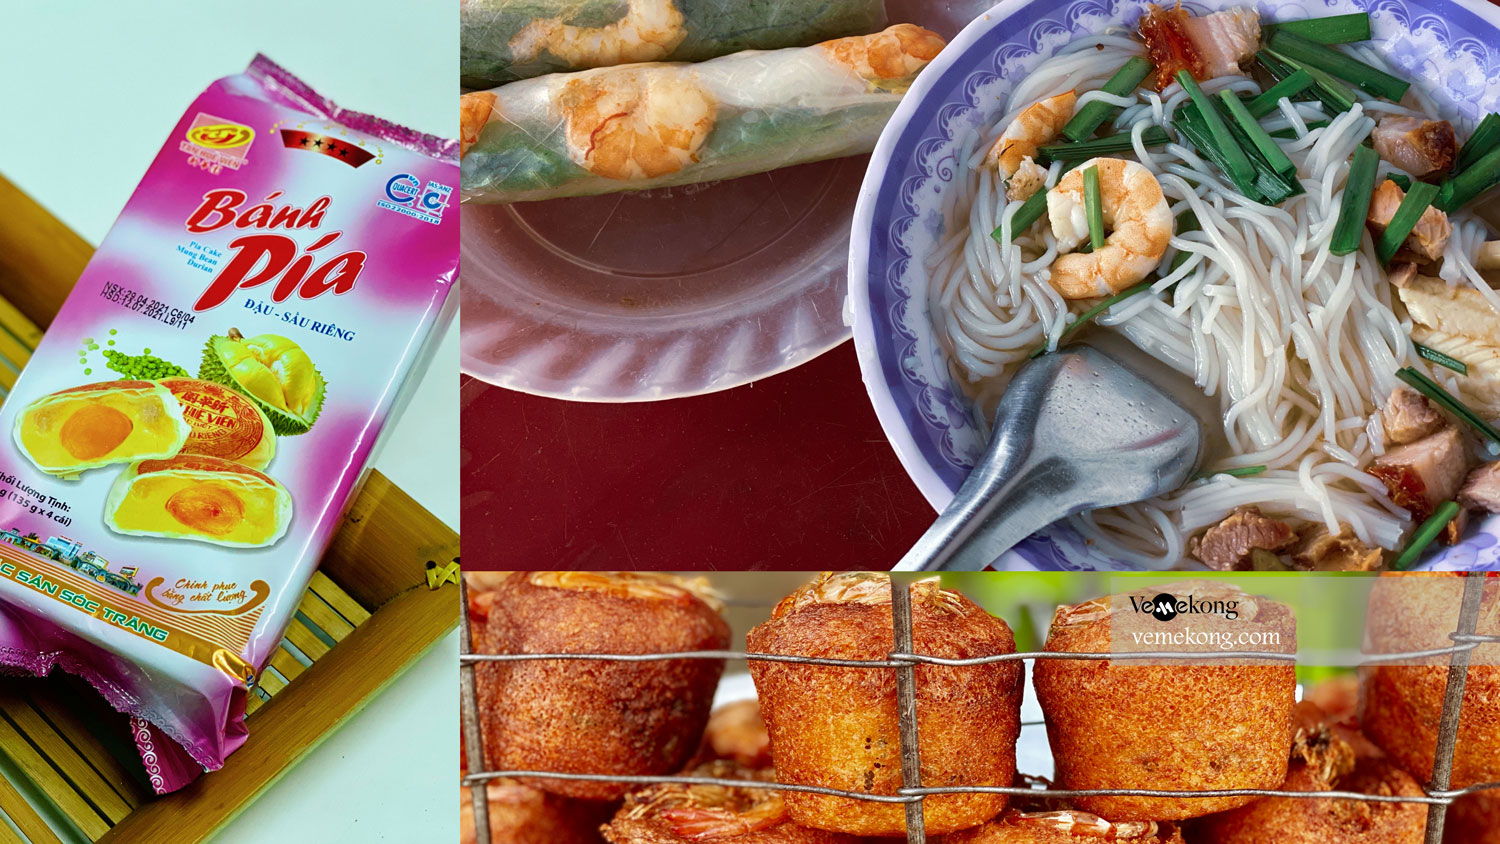 Soc Trang Food & Drink Guide – Top things to try in Soc Trang